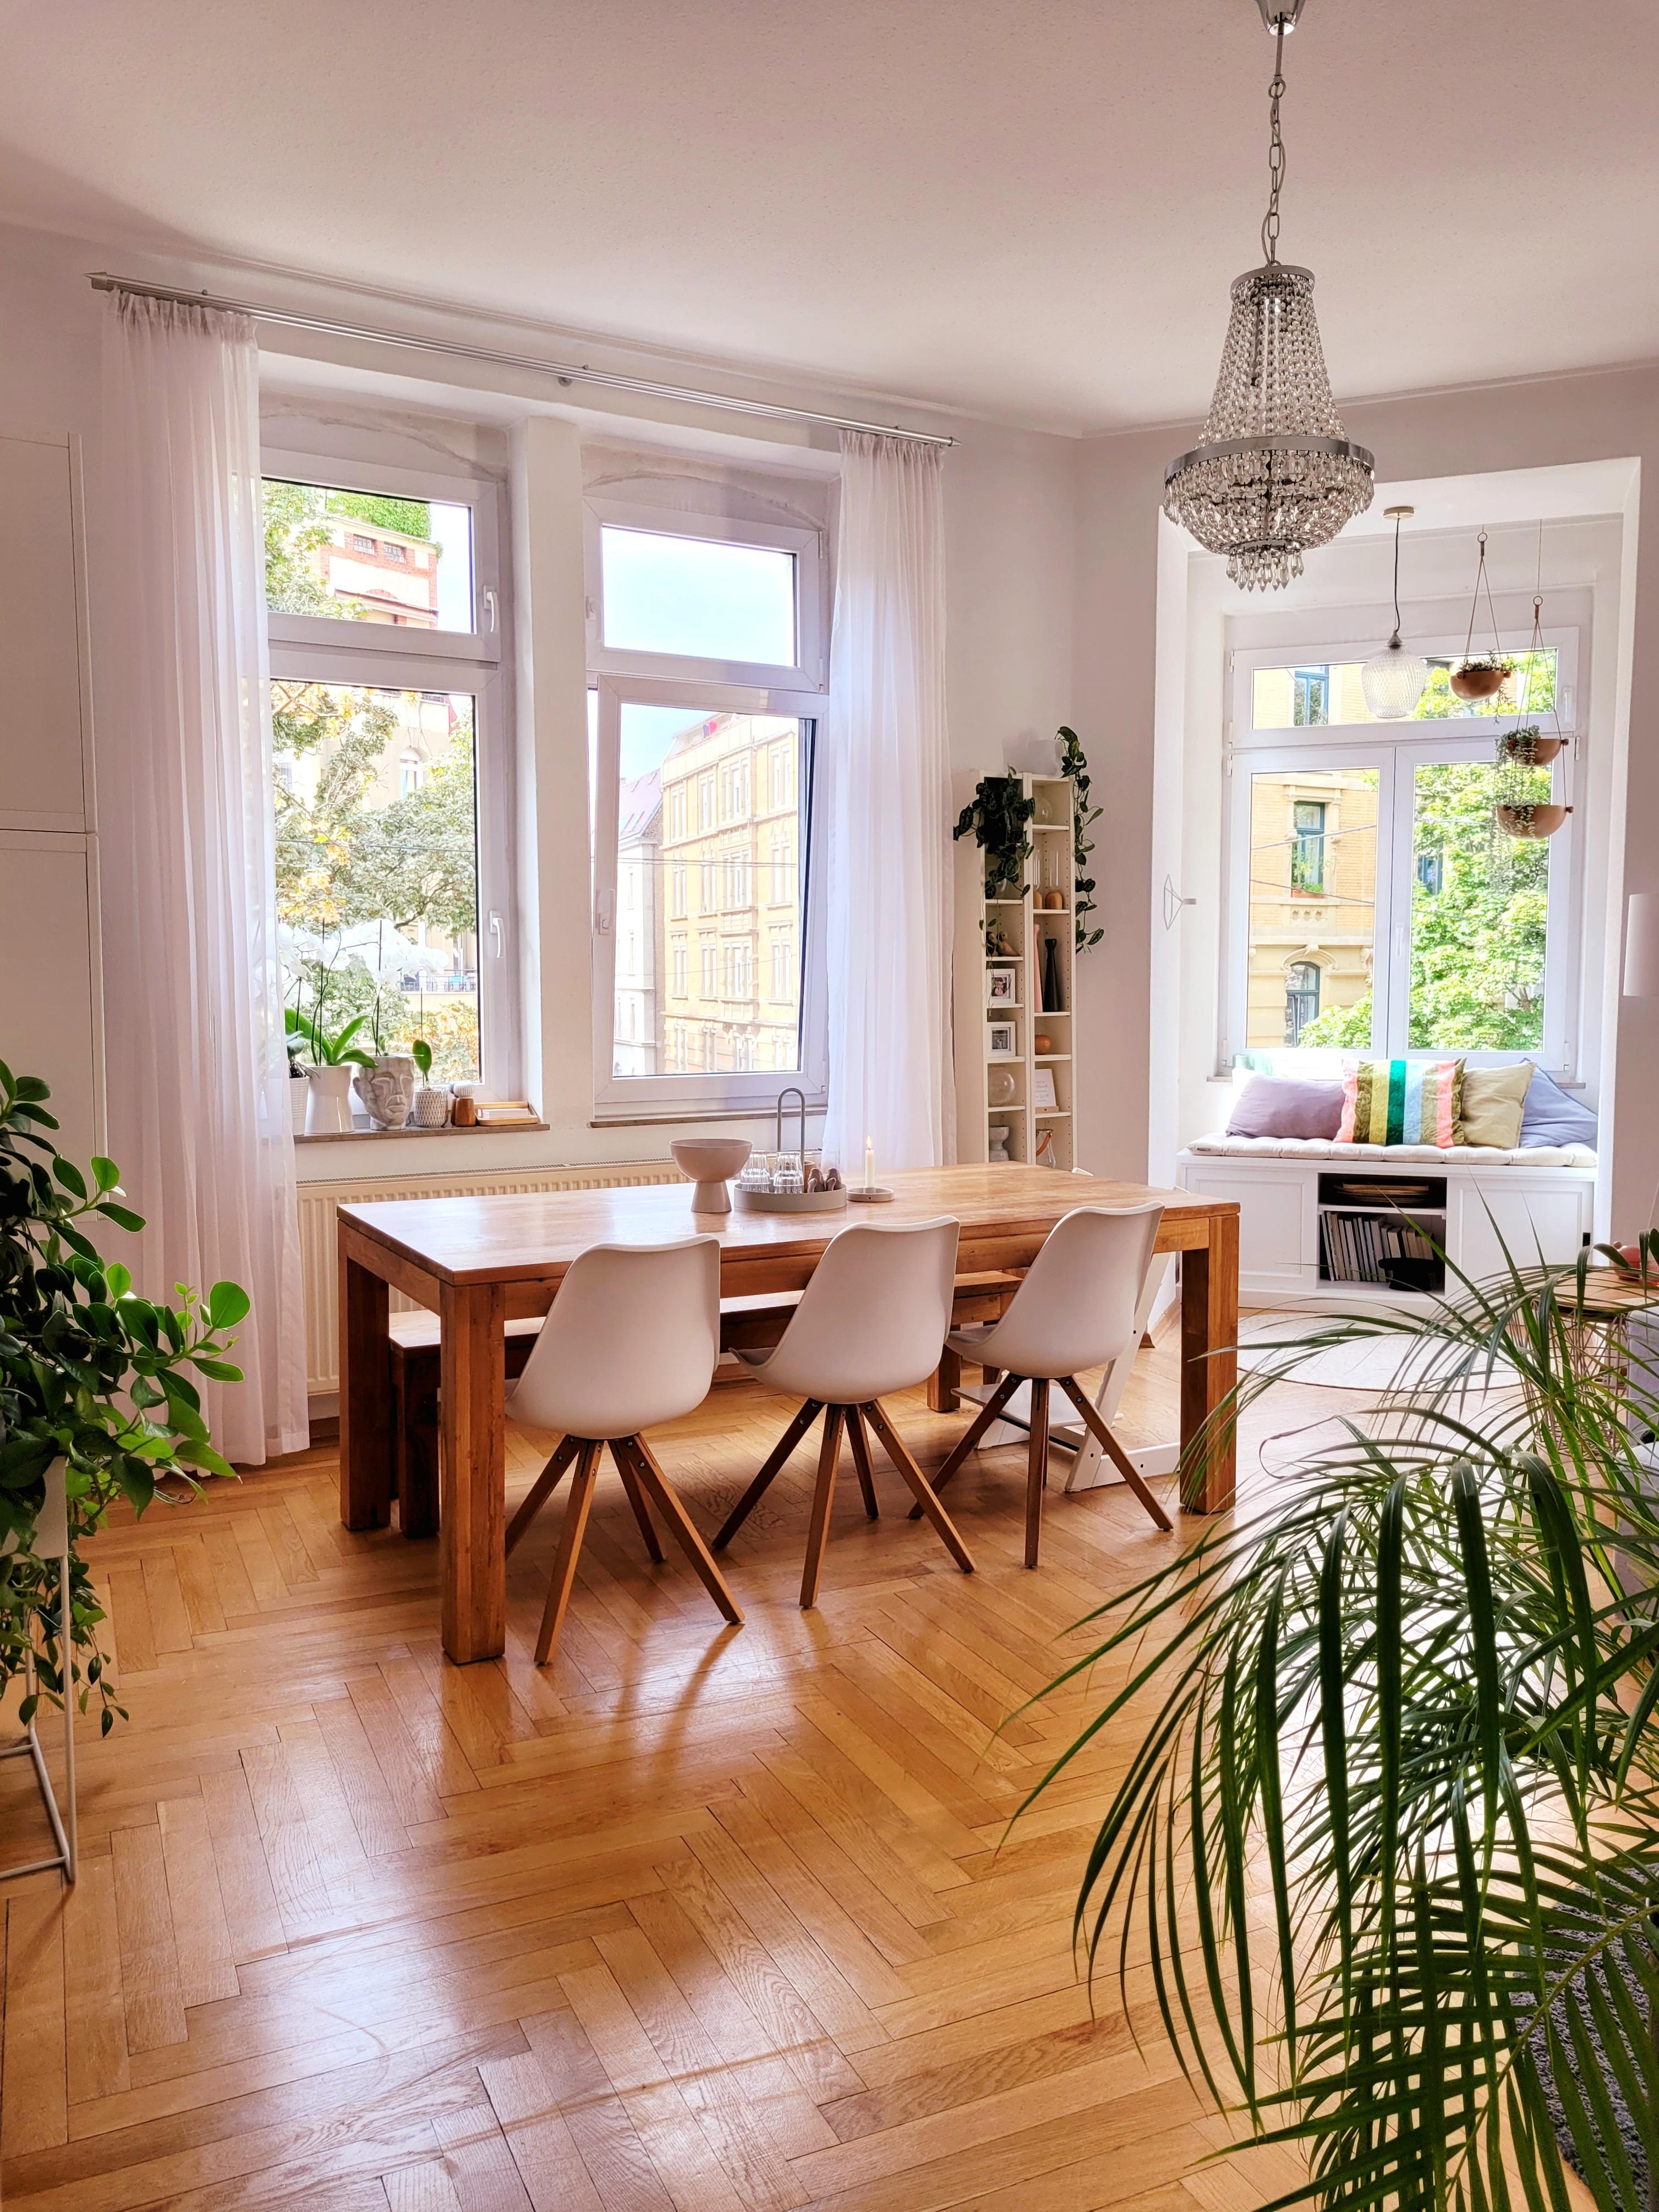 #Altbau #Wohnzimmer #Esszimmer #Tisch #Holztisch #Detail #Stühle
#Erker #Kronleuchter #skandi #Pflanzen #skandi